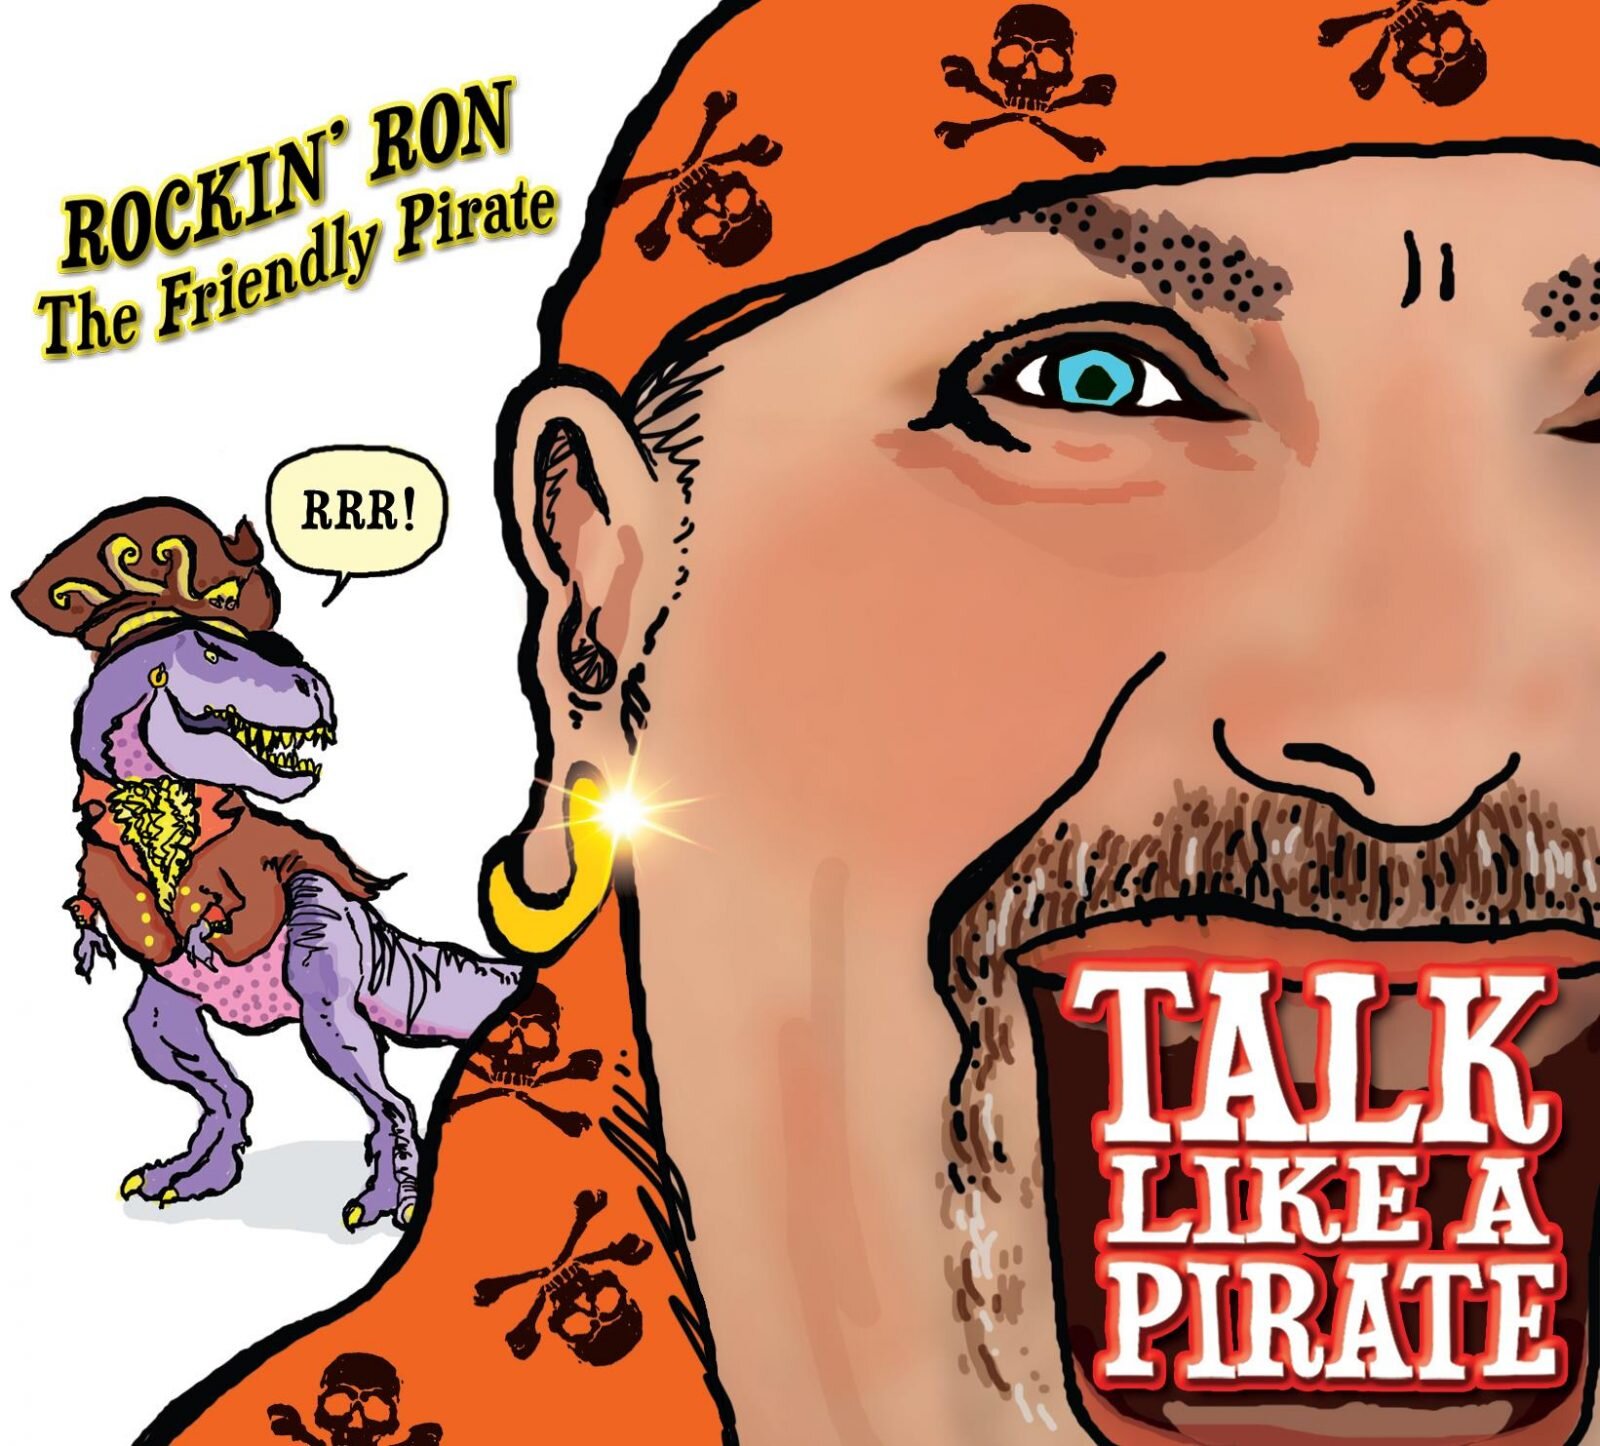 Talk-Like-a-Pirate-mp3-image-1600x1446.jpg